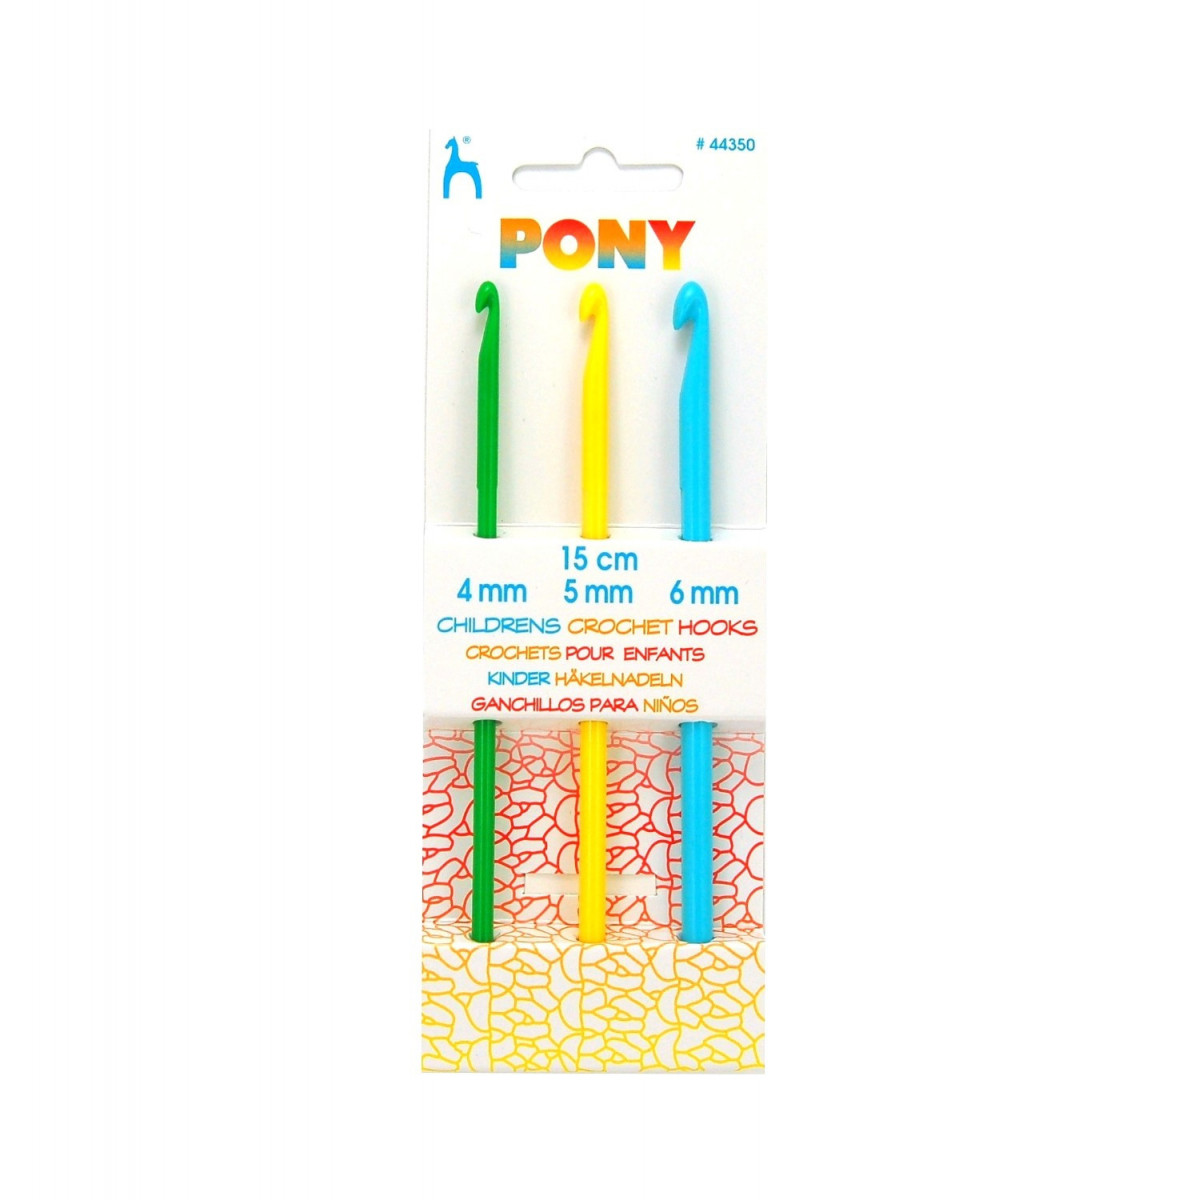 Zestaw szydełek dla dzieci PONY -4-6,00 mm x 15 cm - 3szt./opak.